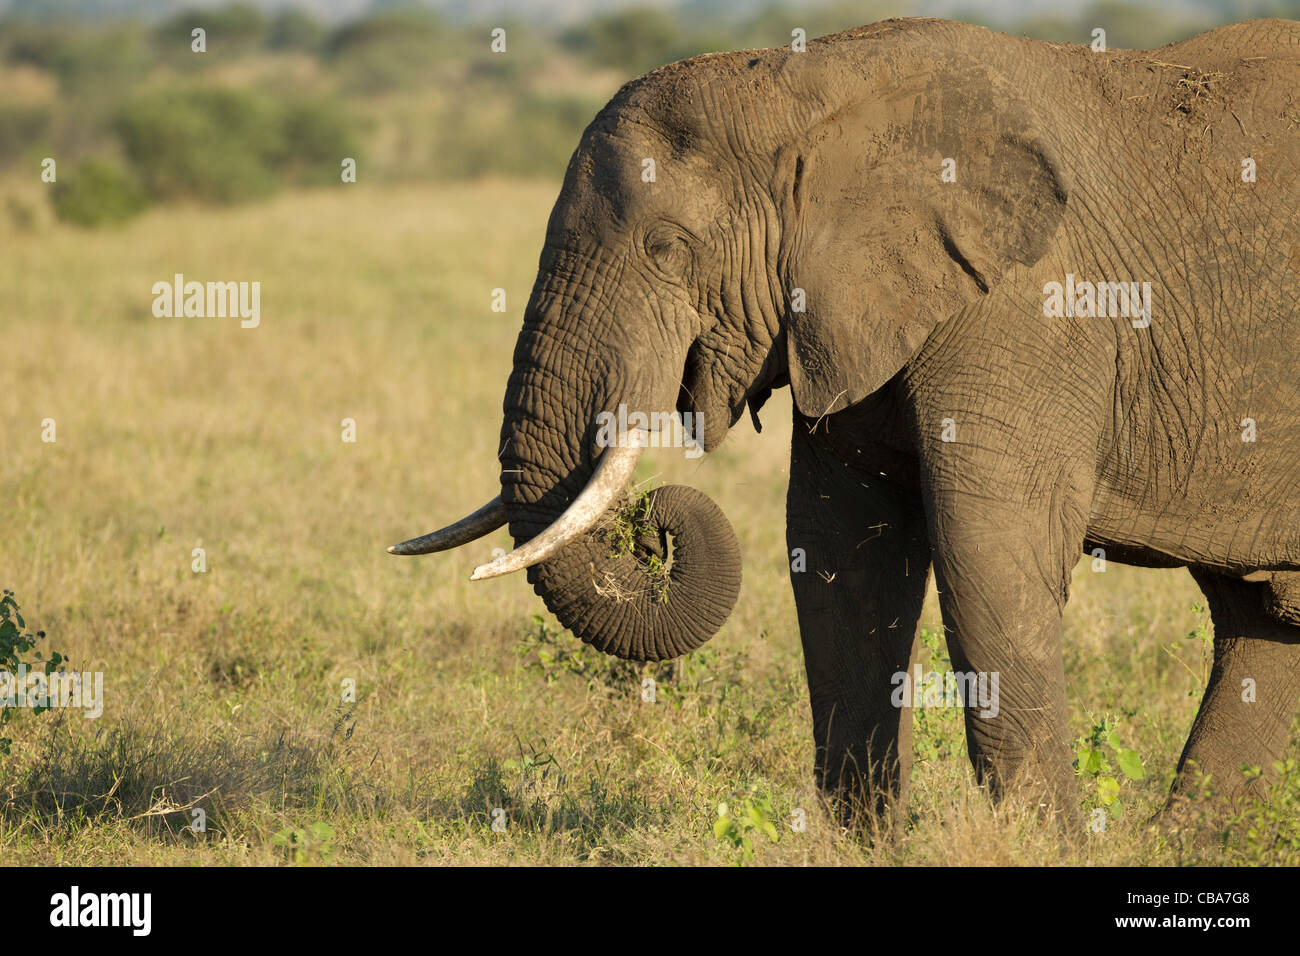 African Elephant eating (Loxodonta africana) Stock Photo